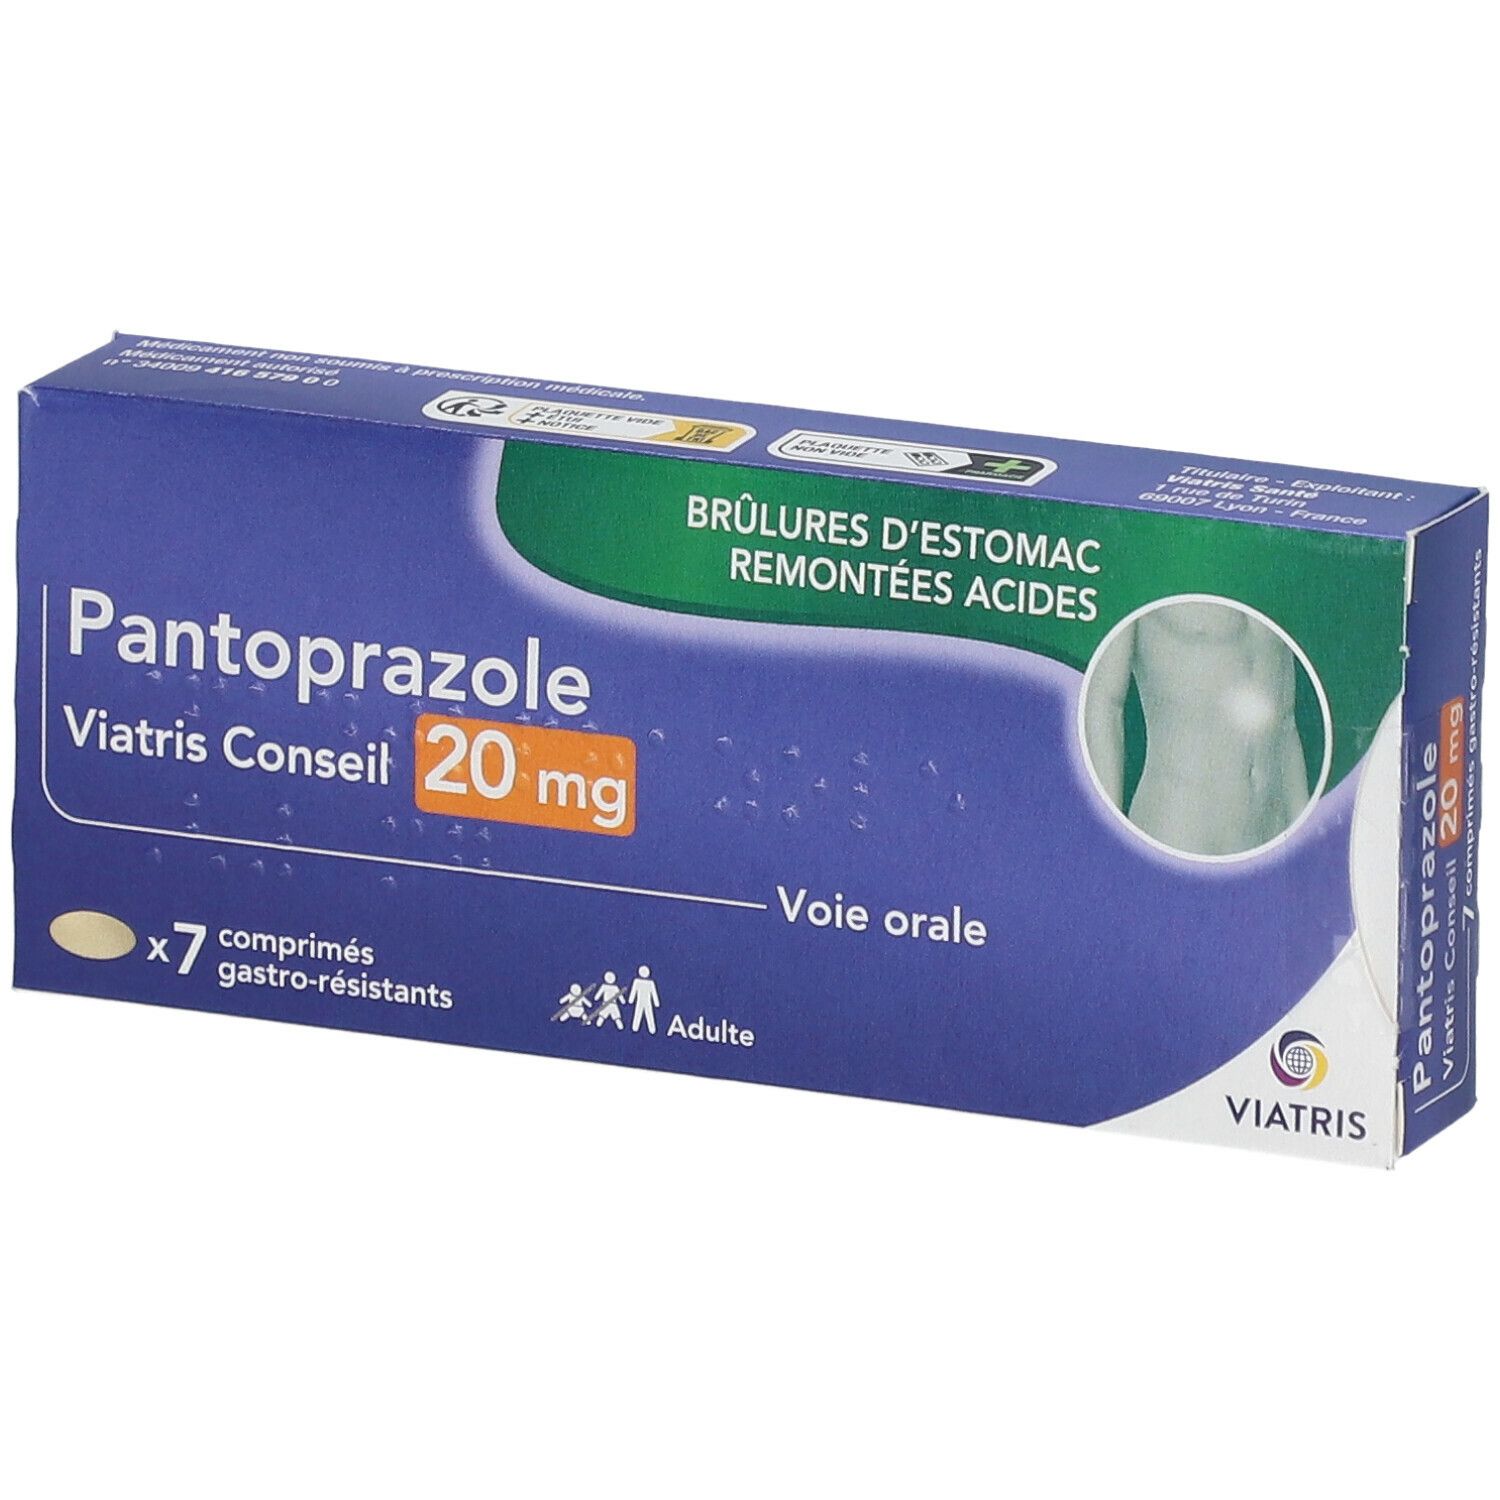 Pantoprazole Viatris Conseil 20 mg